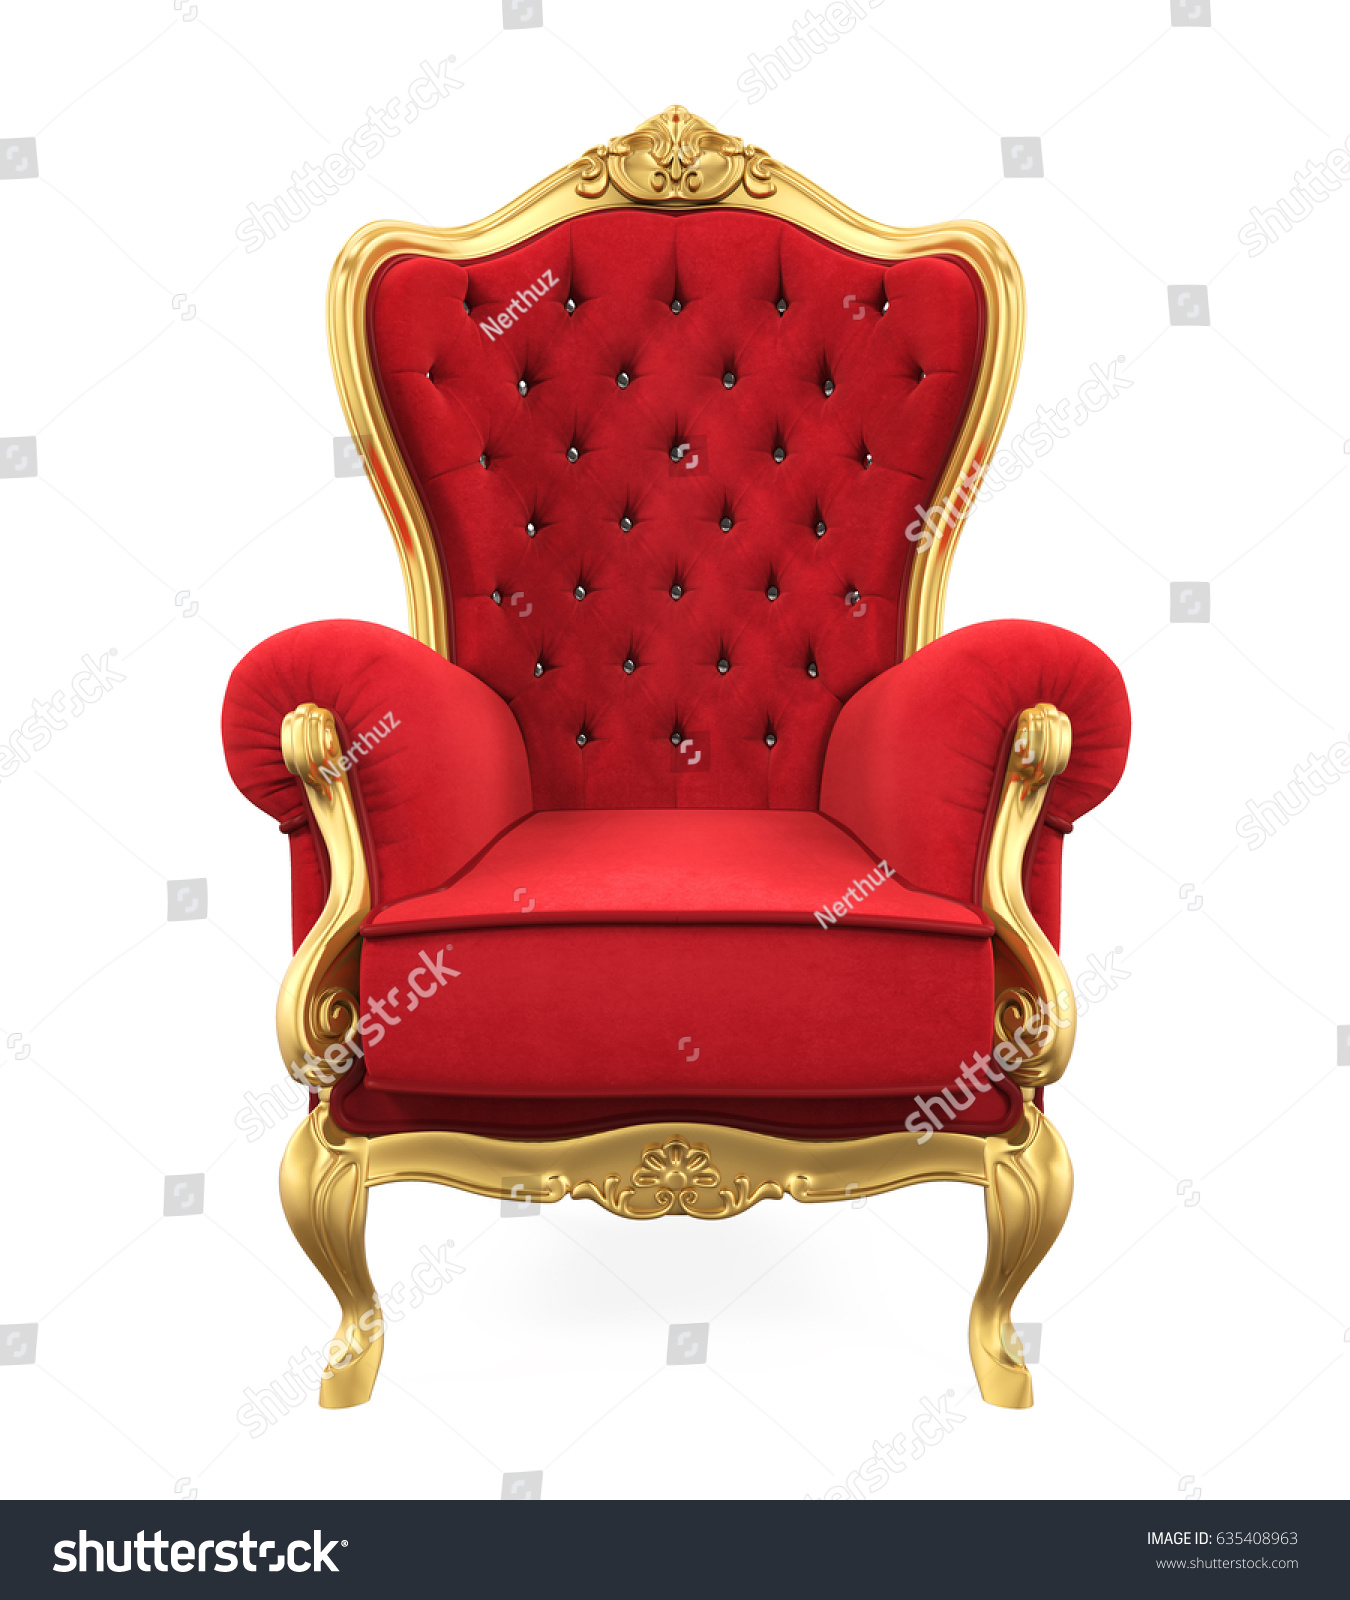 玉座の椅子 3dレンダリング のイラスト素材 635408963